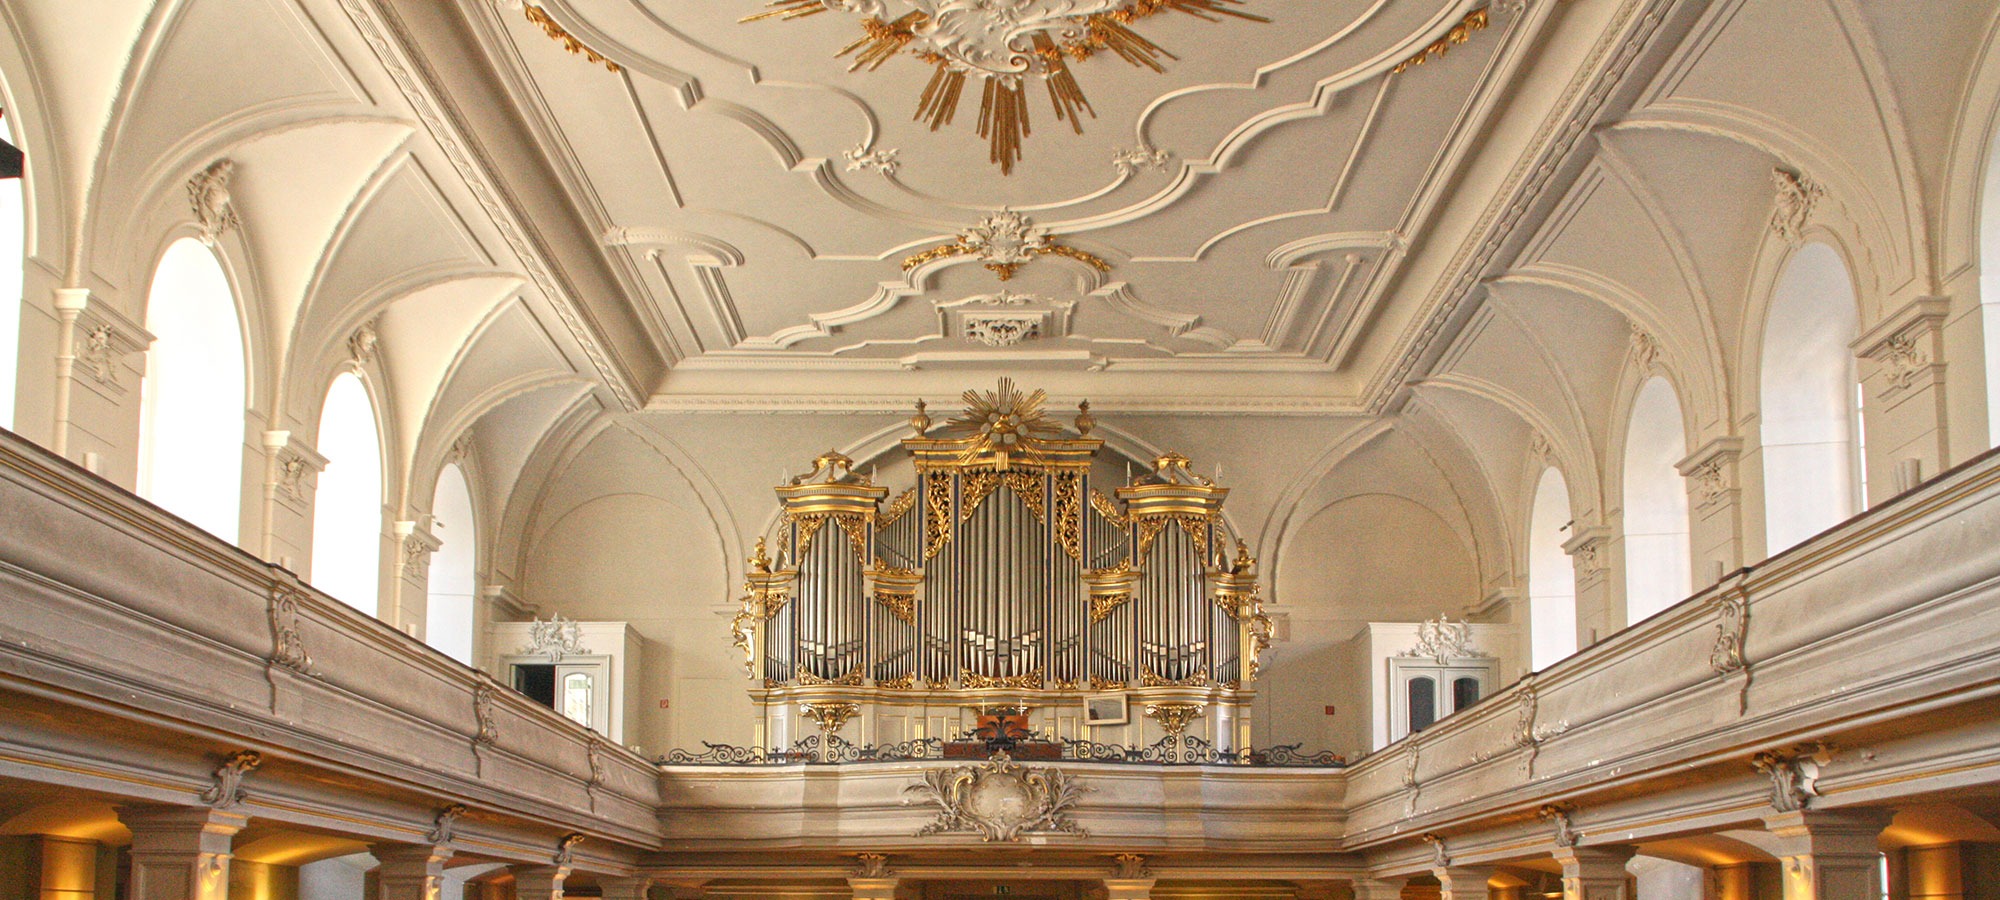 Das Innere einer barocken Kirche mit einer barocken Orgel 